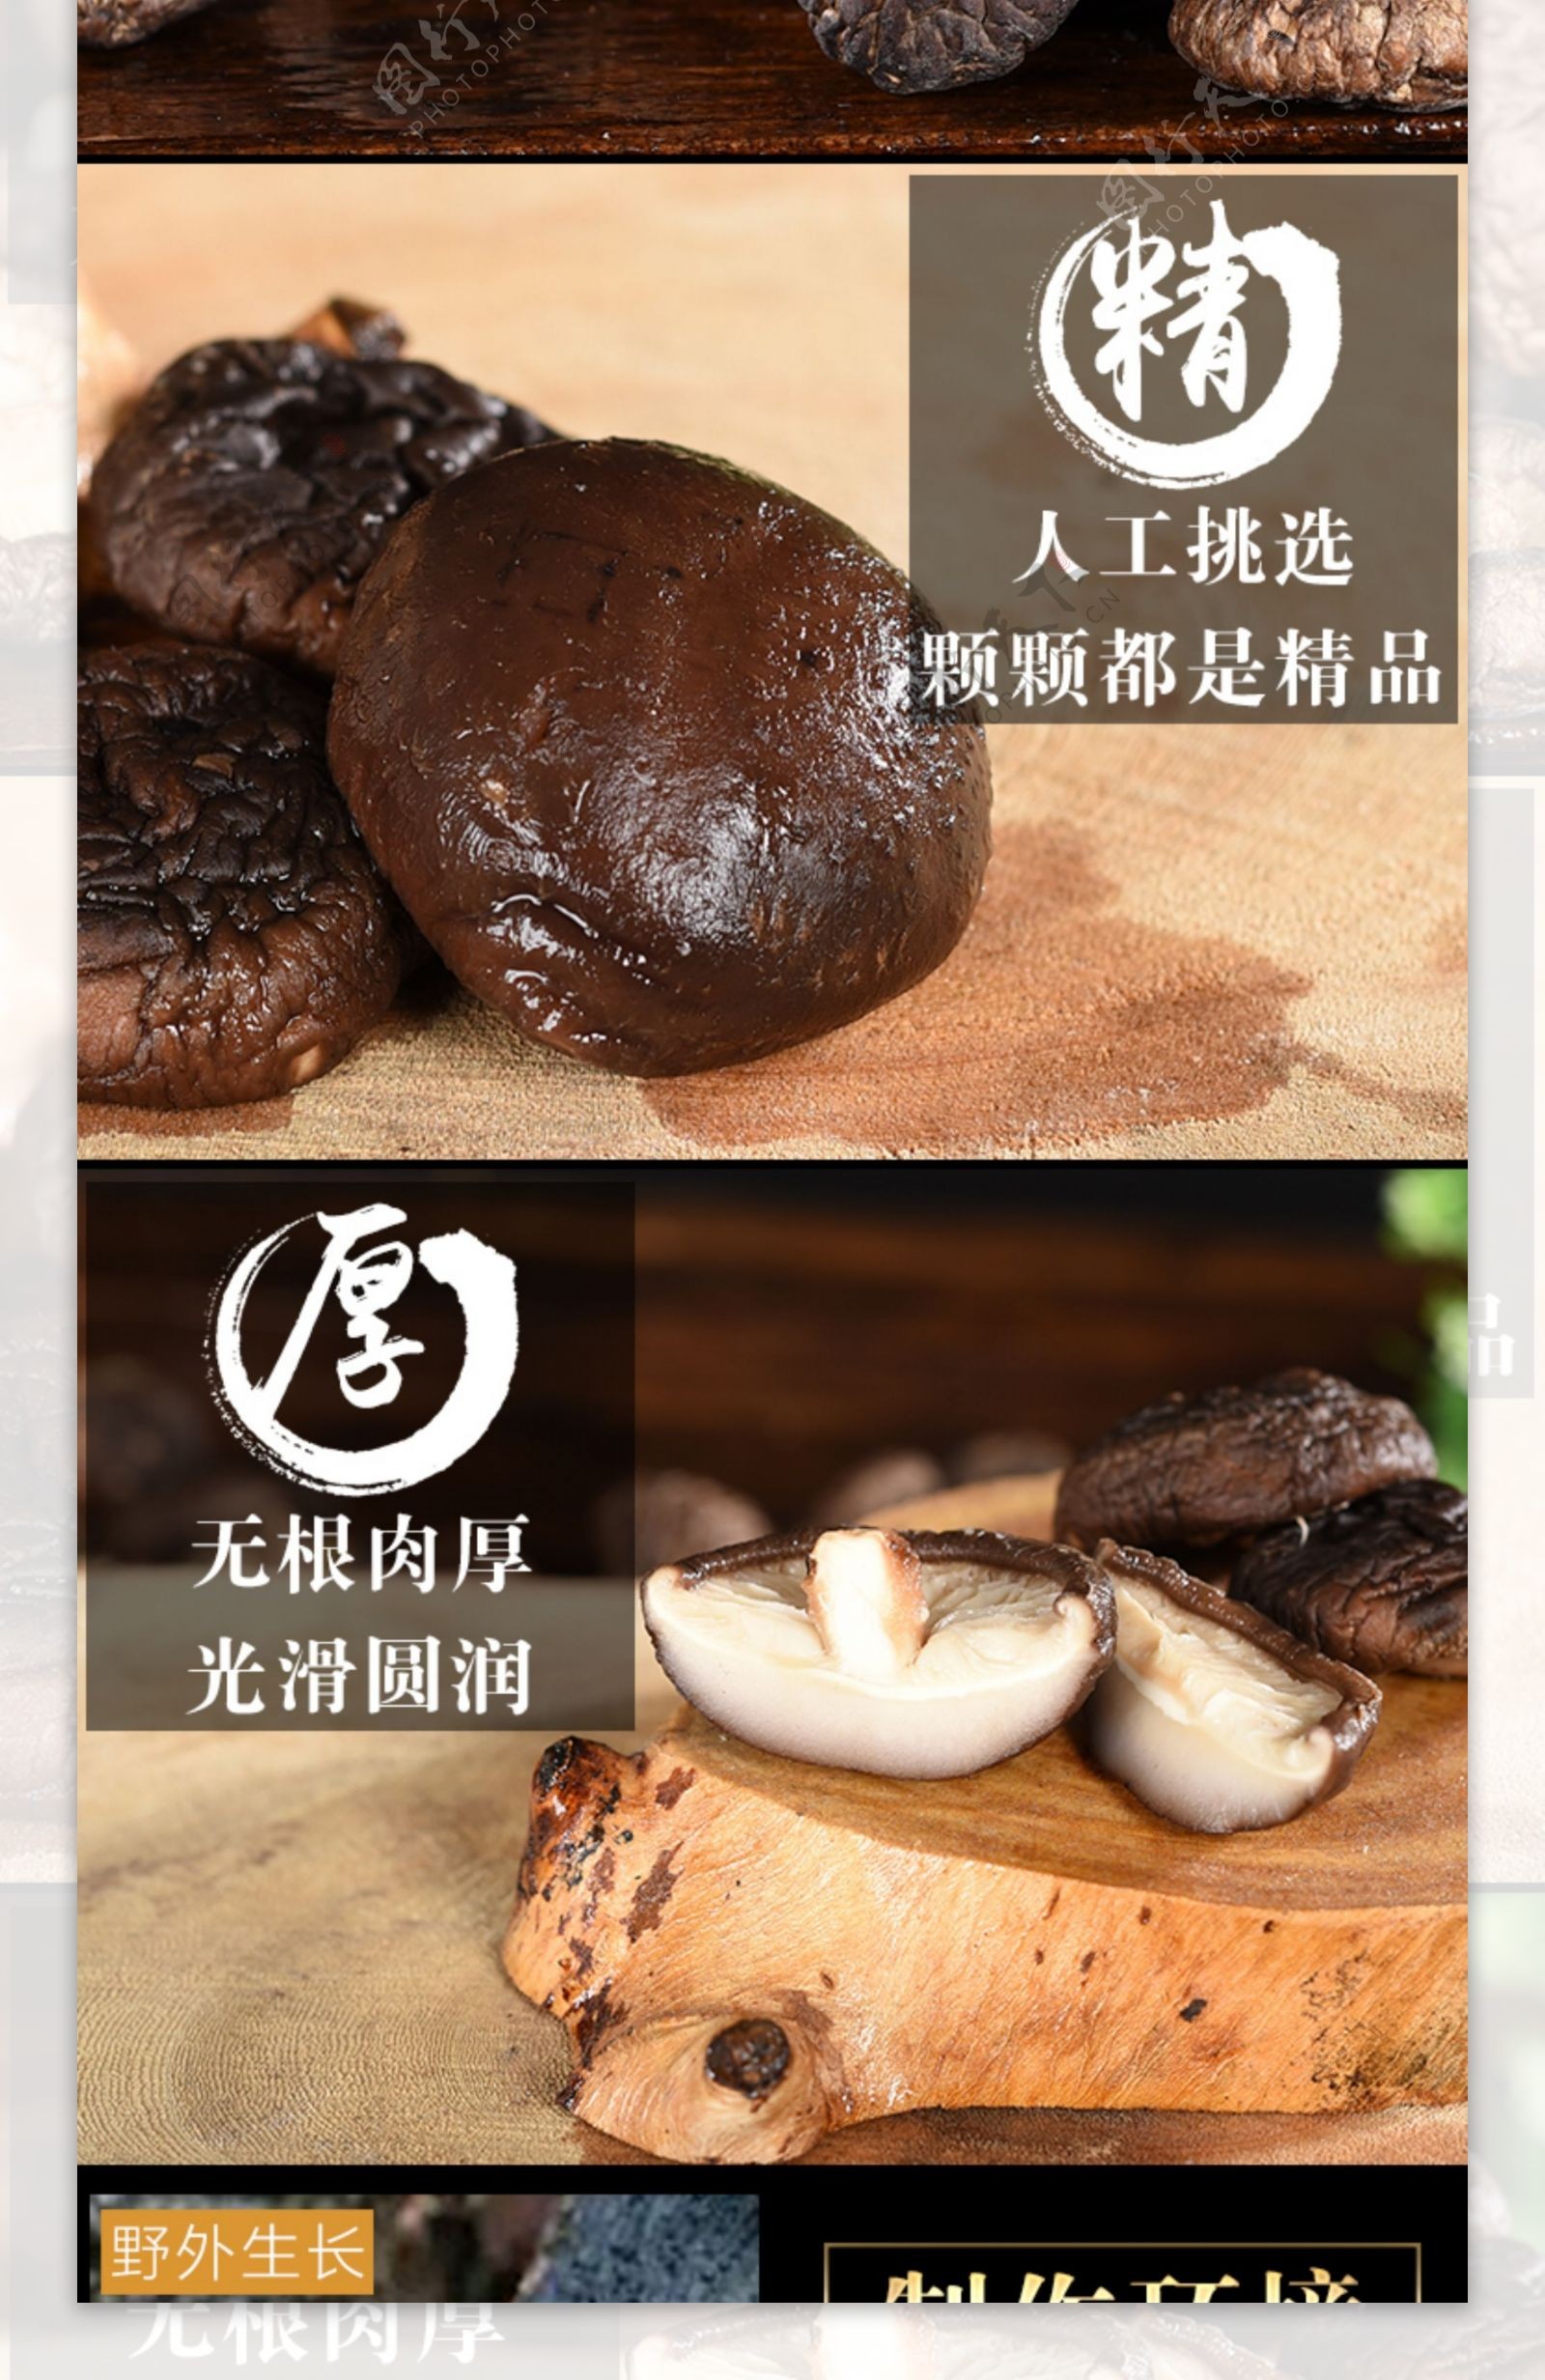 香菇土特产淘宝详情页